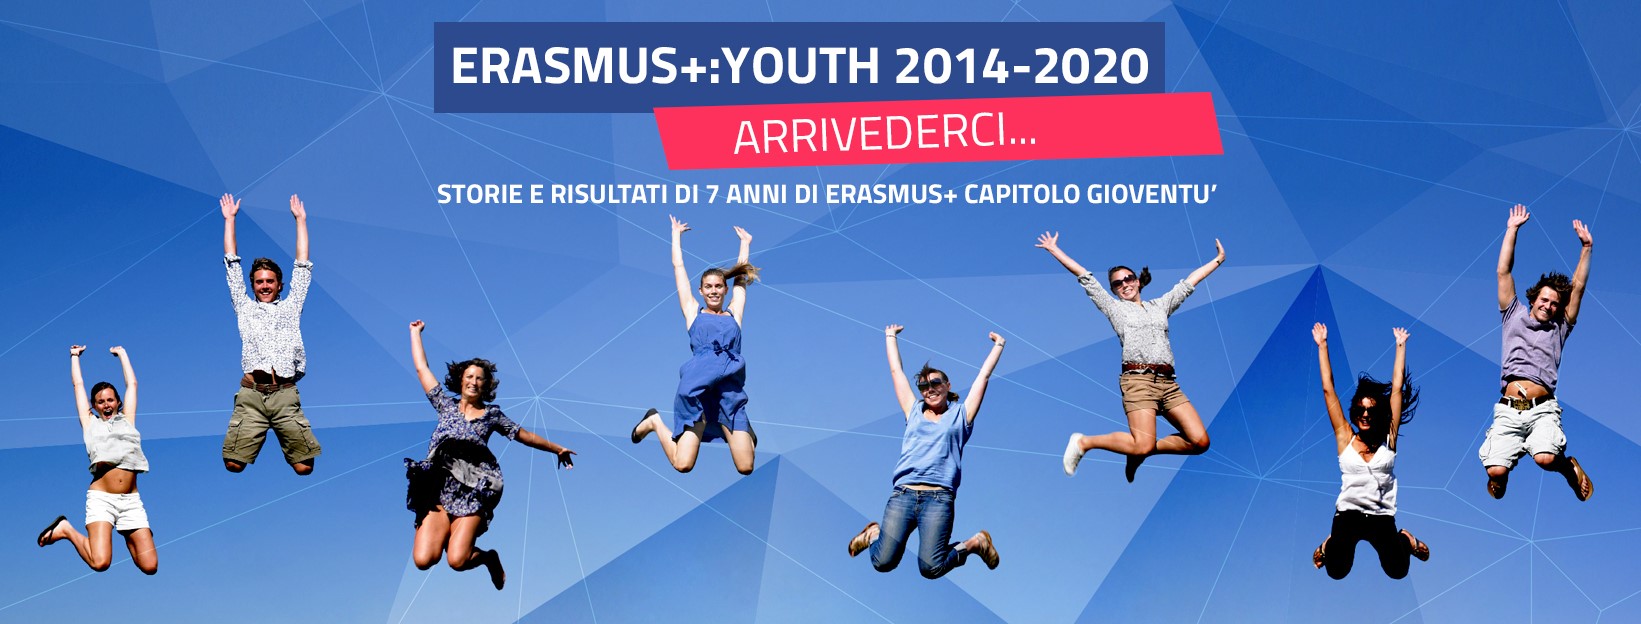 Arrivederci Erasmus+ 2014-2020... ci vediamo nel prossimo settennio! 